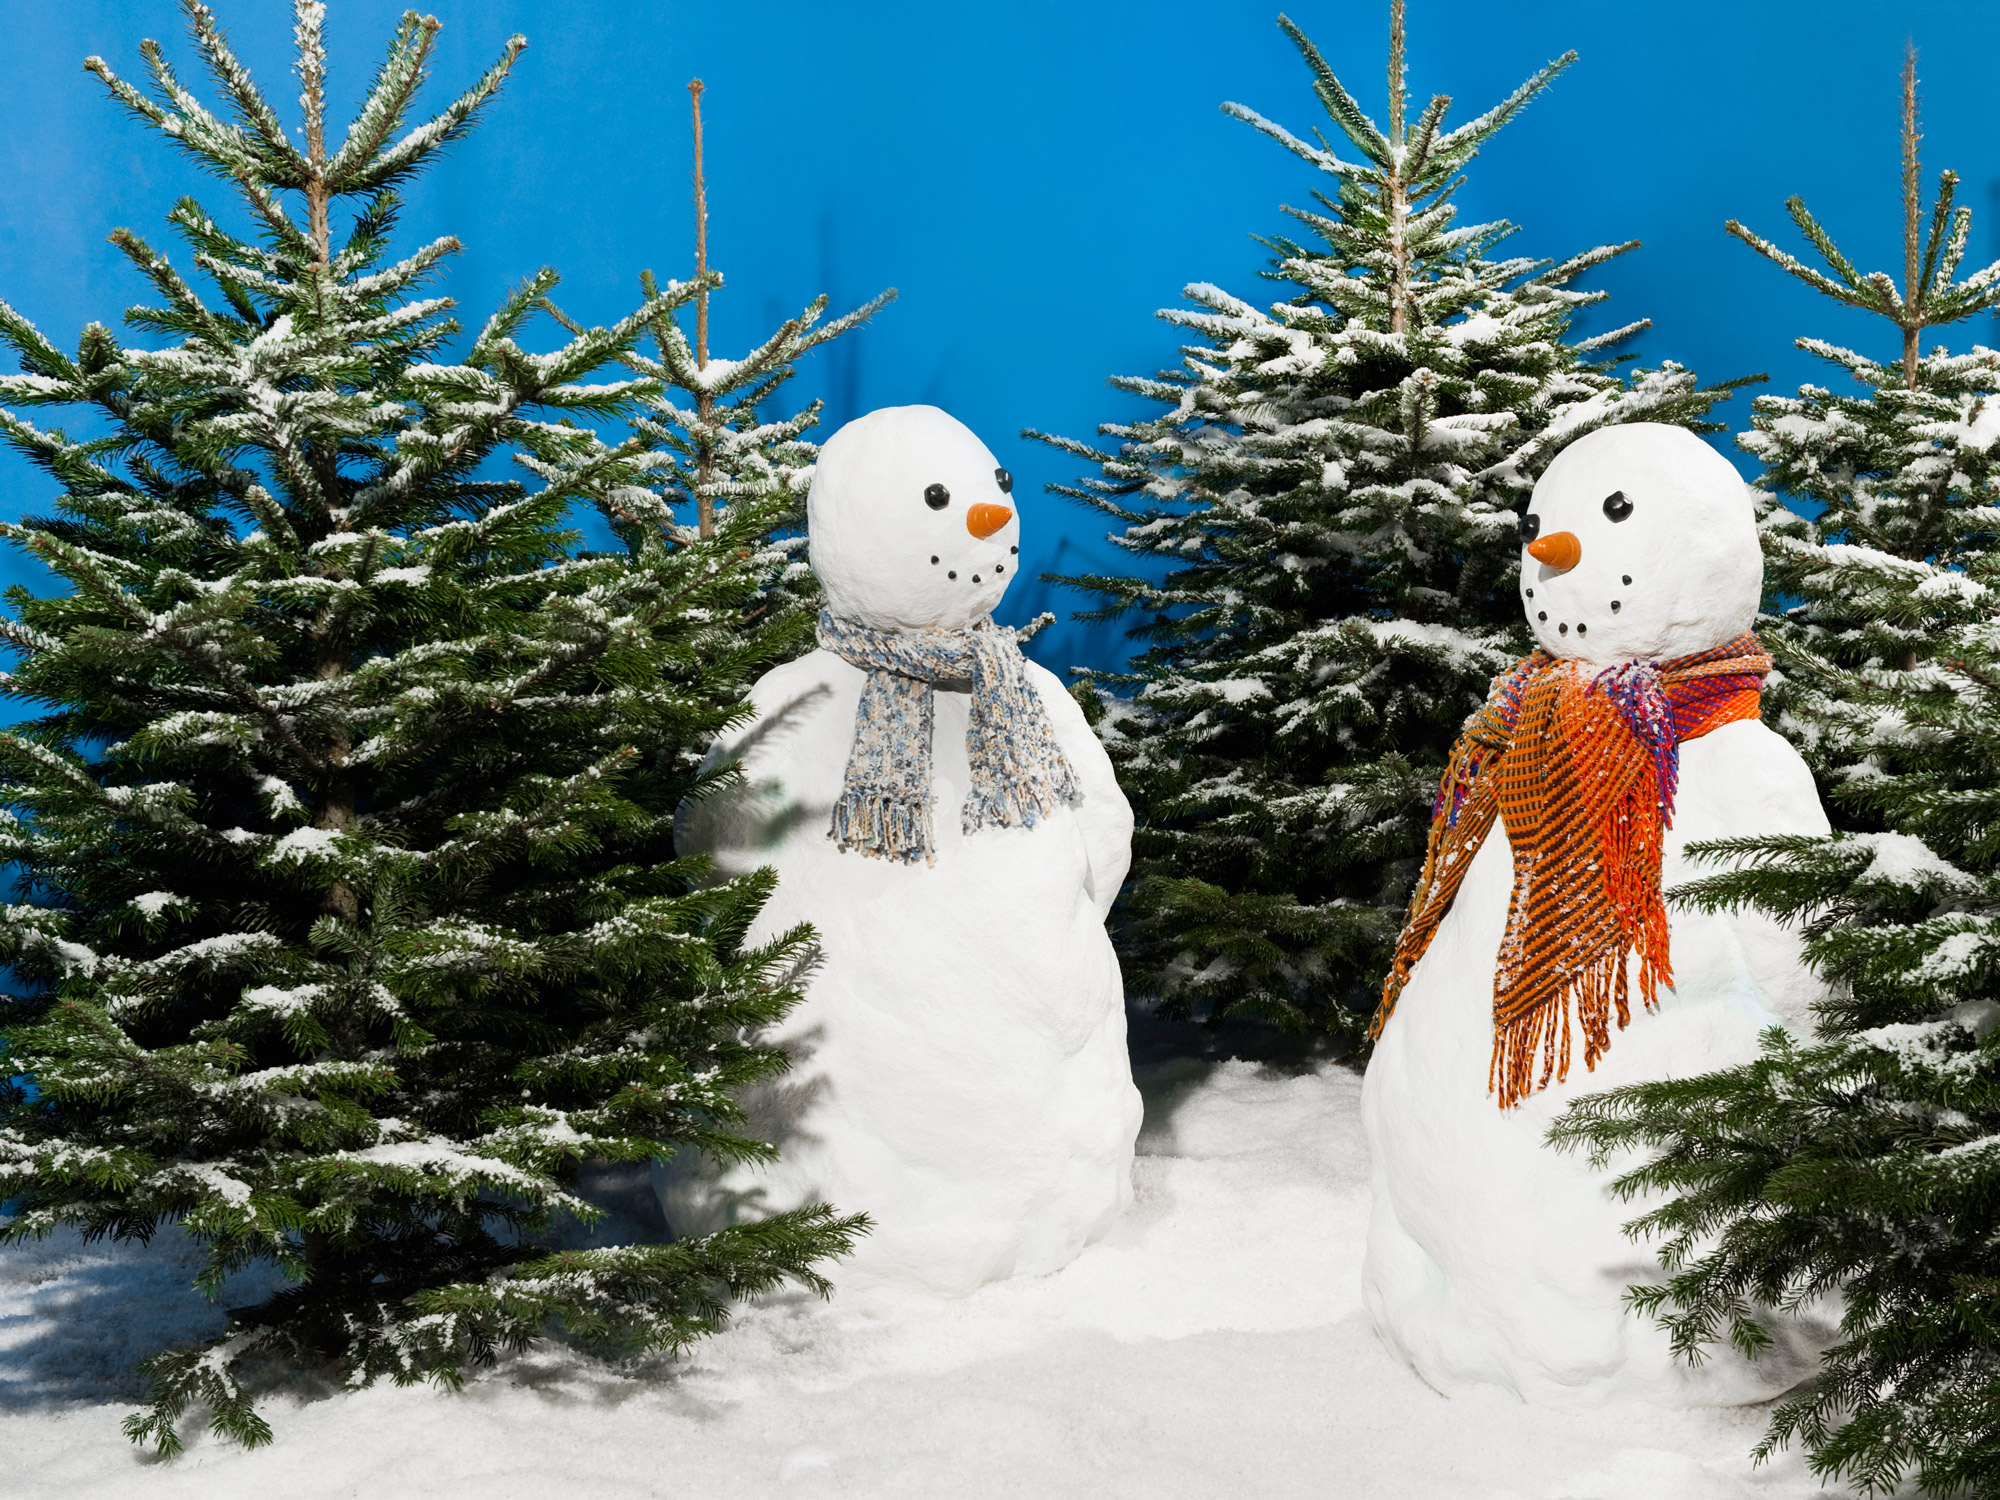 White Christmas tree – Christmas tree artificial snow